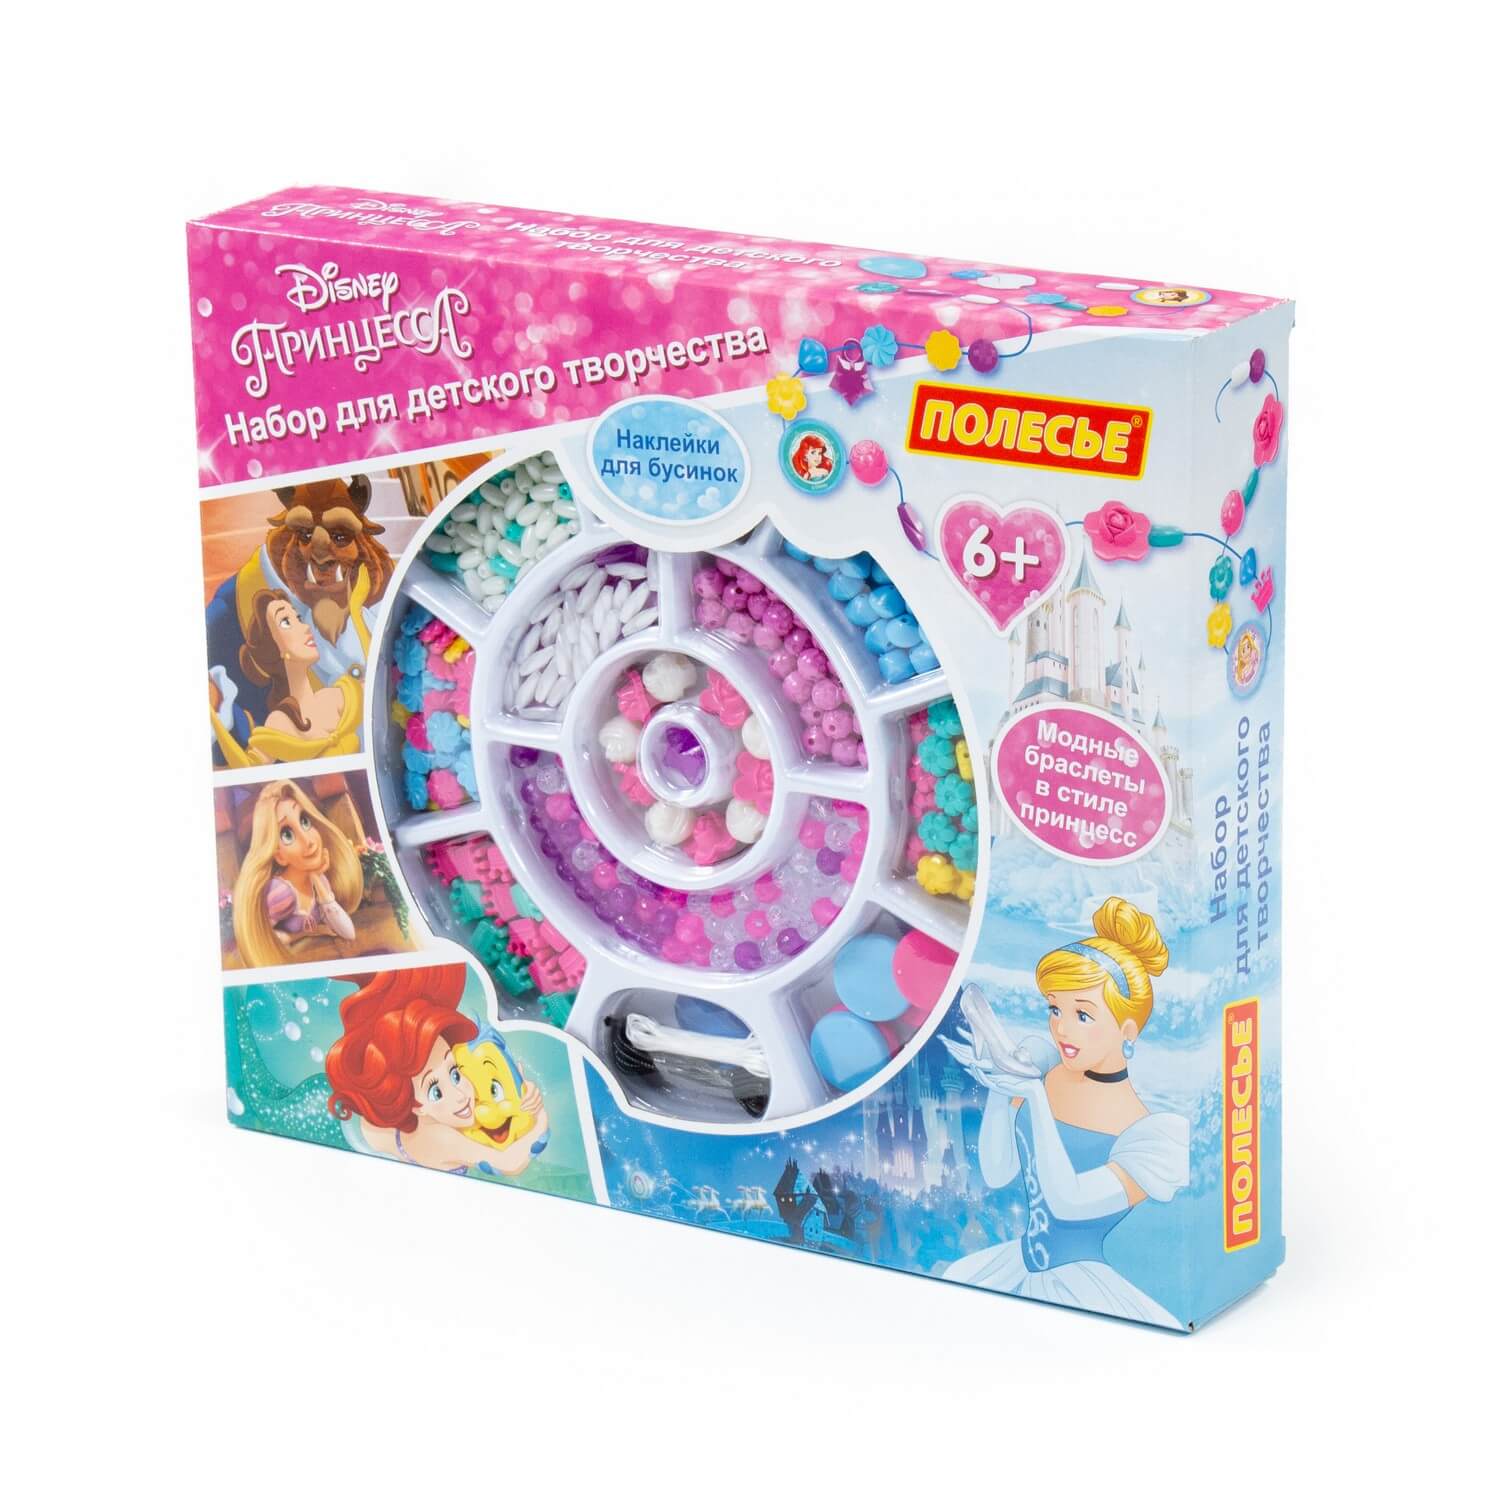 Набор для детского творчества Полесье Disney Принцесса, 307 эл. принцесса disney 1000 и 1 головоломка